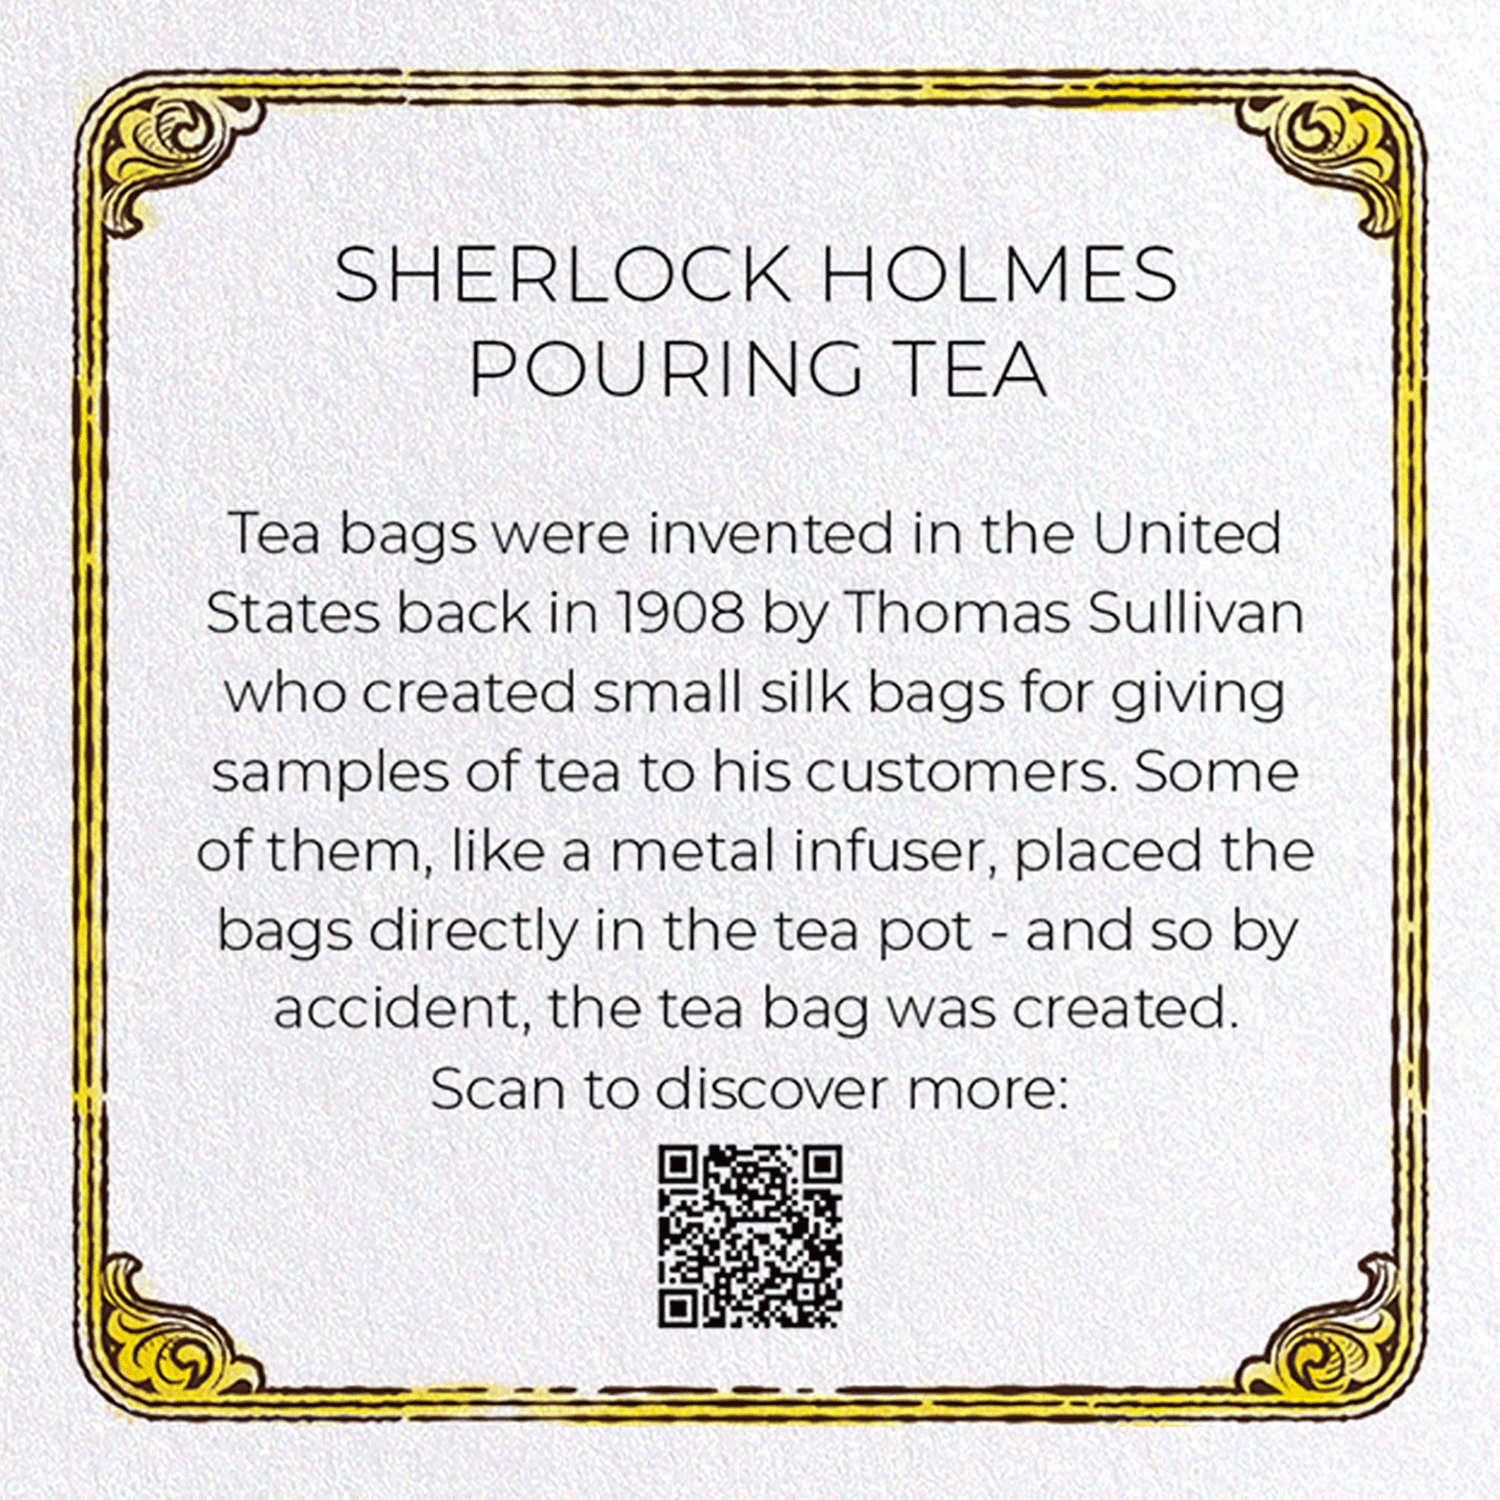 SHERLOCK HOLMES POURING TEA: Bespoke Greeting Card